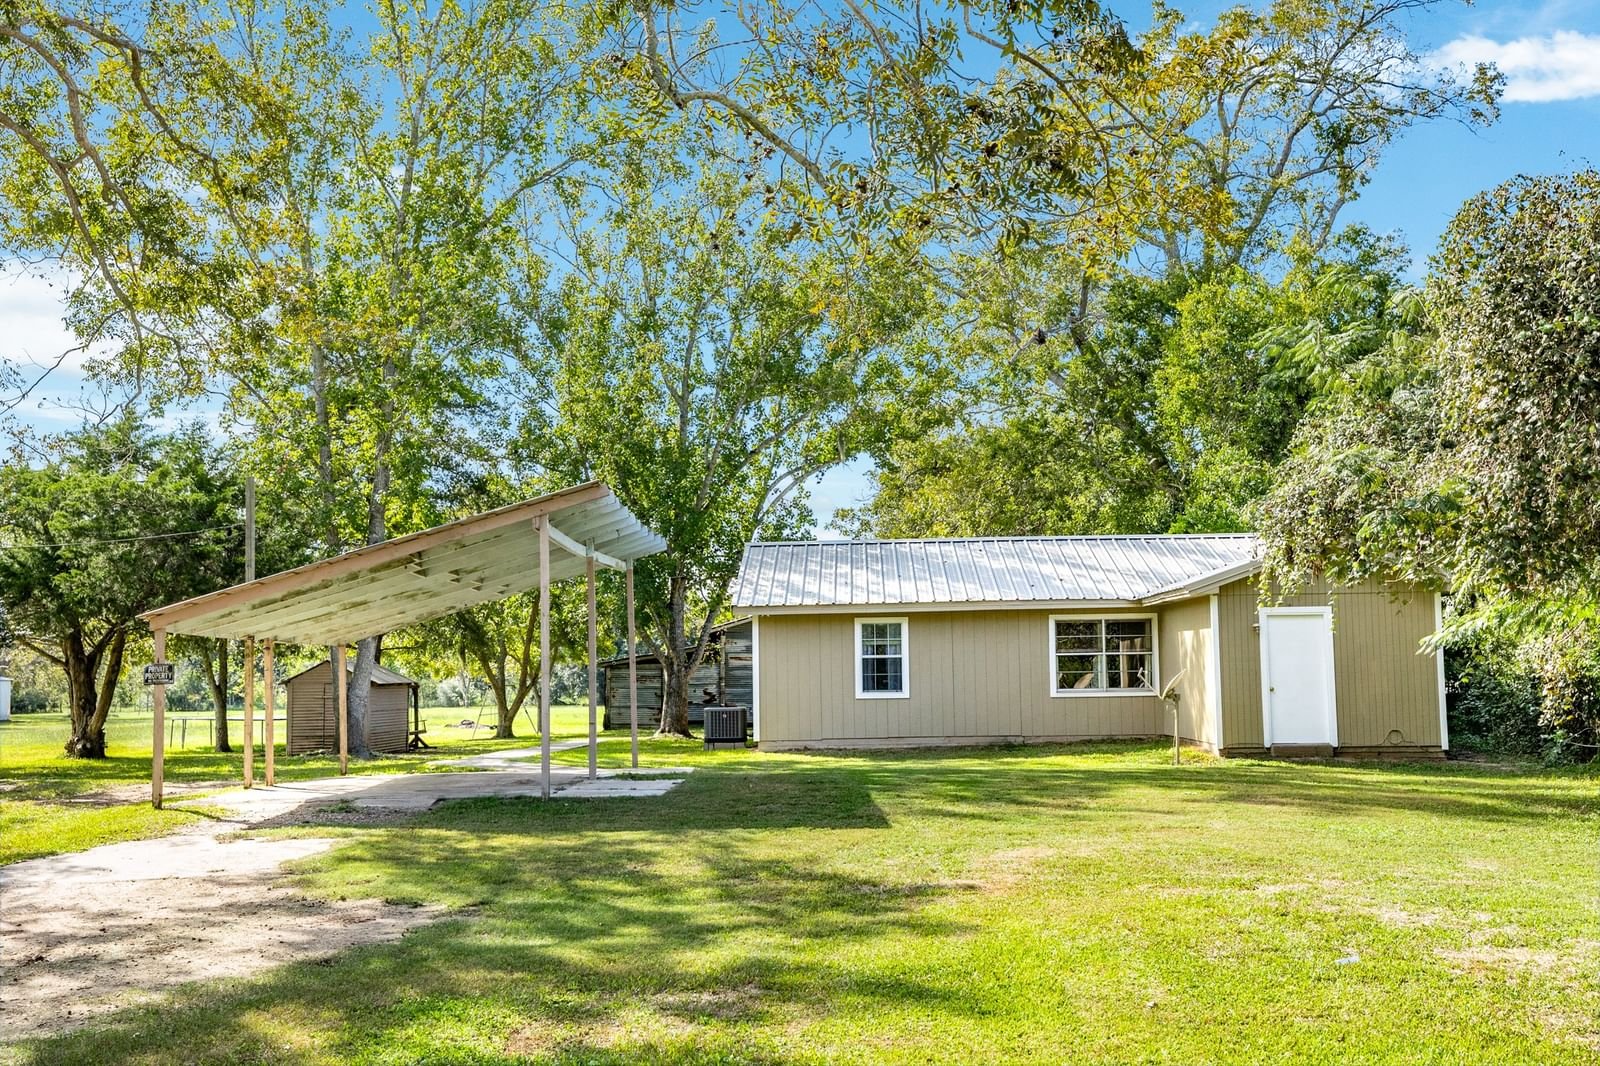 Real estate property located at 5007 County Road 356, Brazoria, S F Austin, Brazoria, TX, US